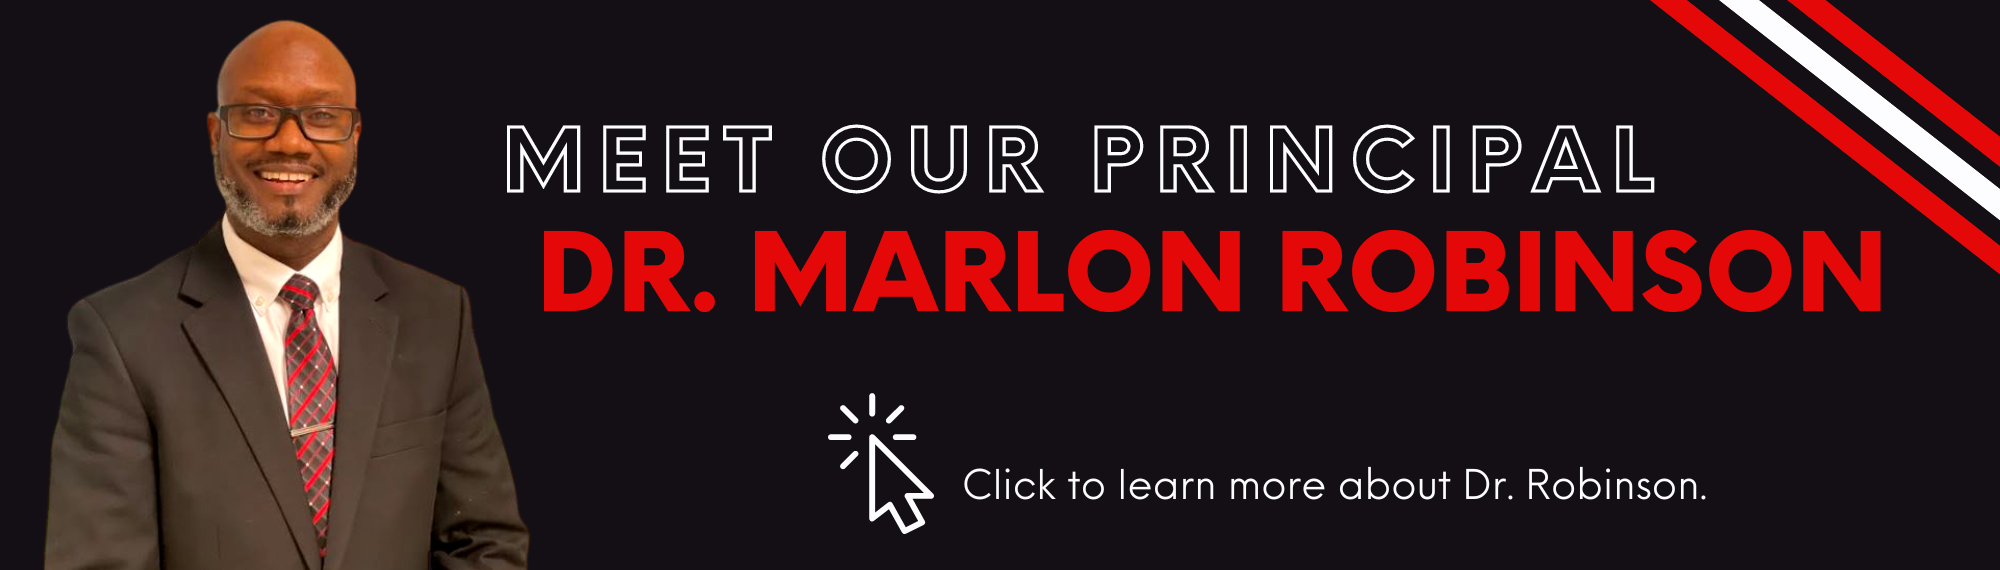 Meet Our Principal, Dr. Marlon Robinson